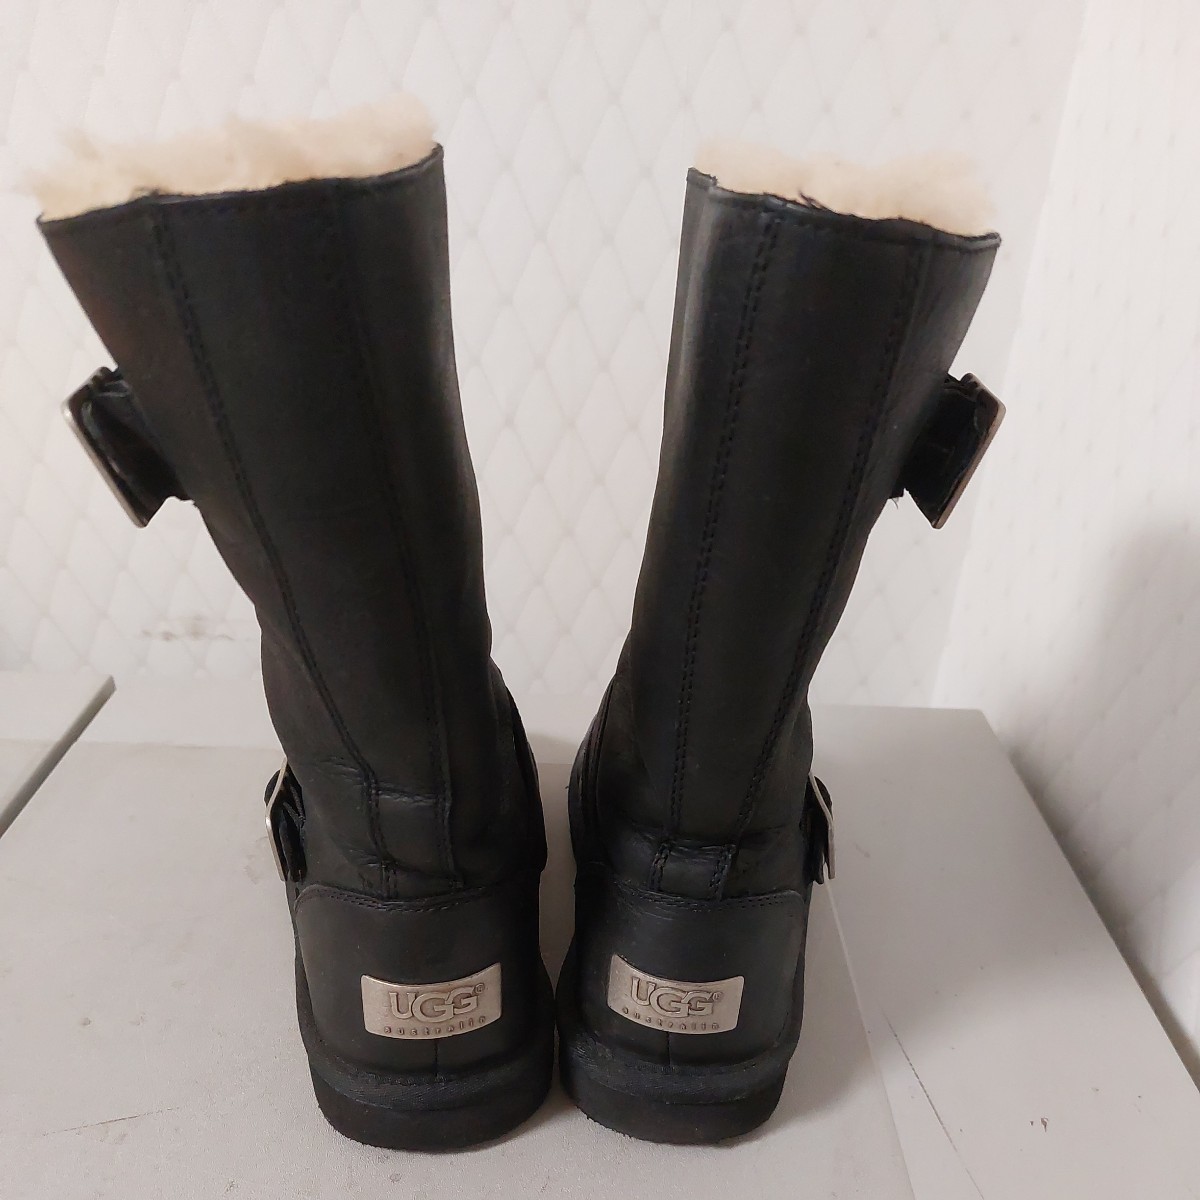 UGG девочка черный ботинки 36,22,0 размер б/у прекрасный товар 